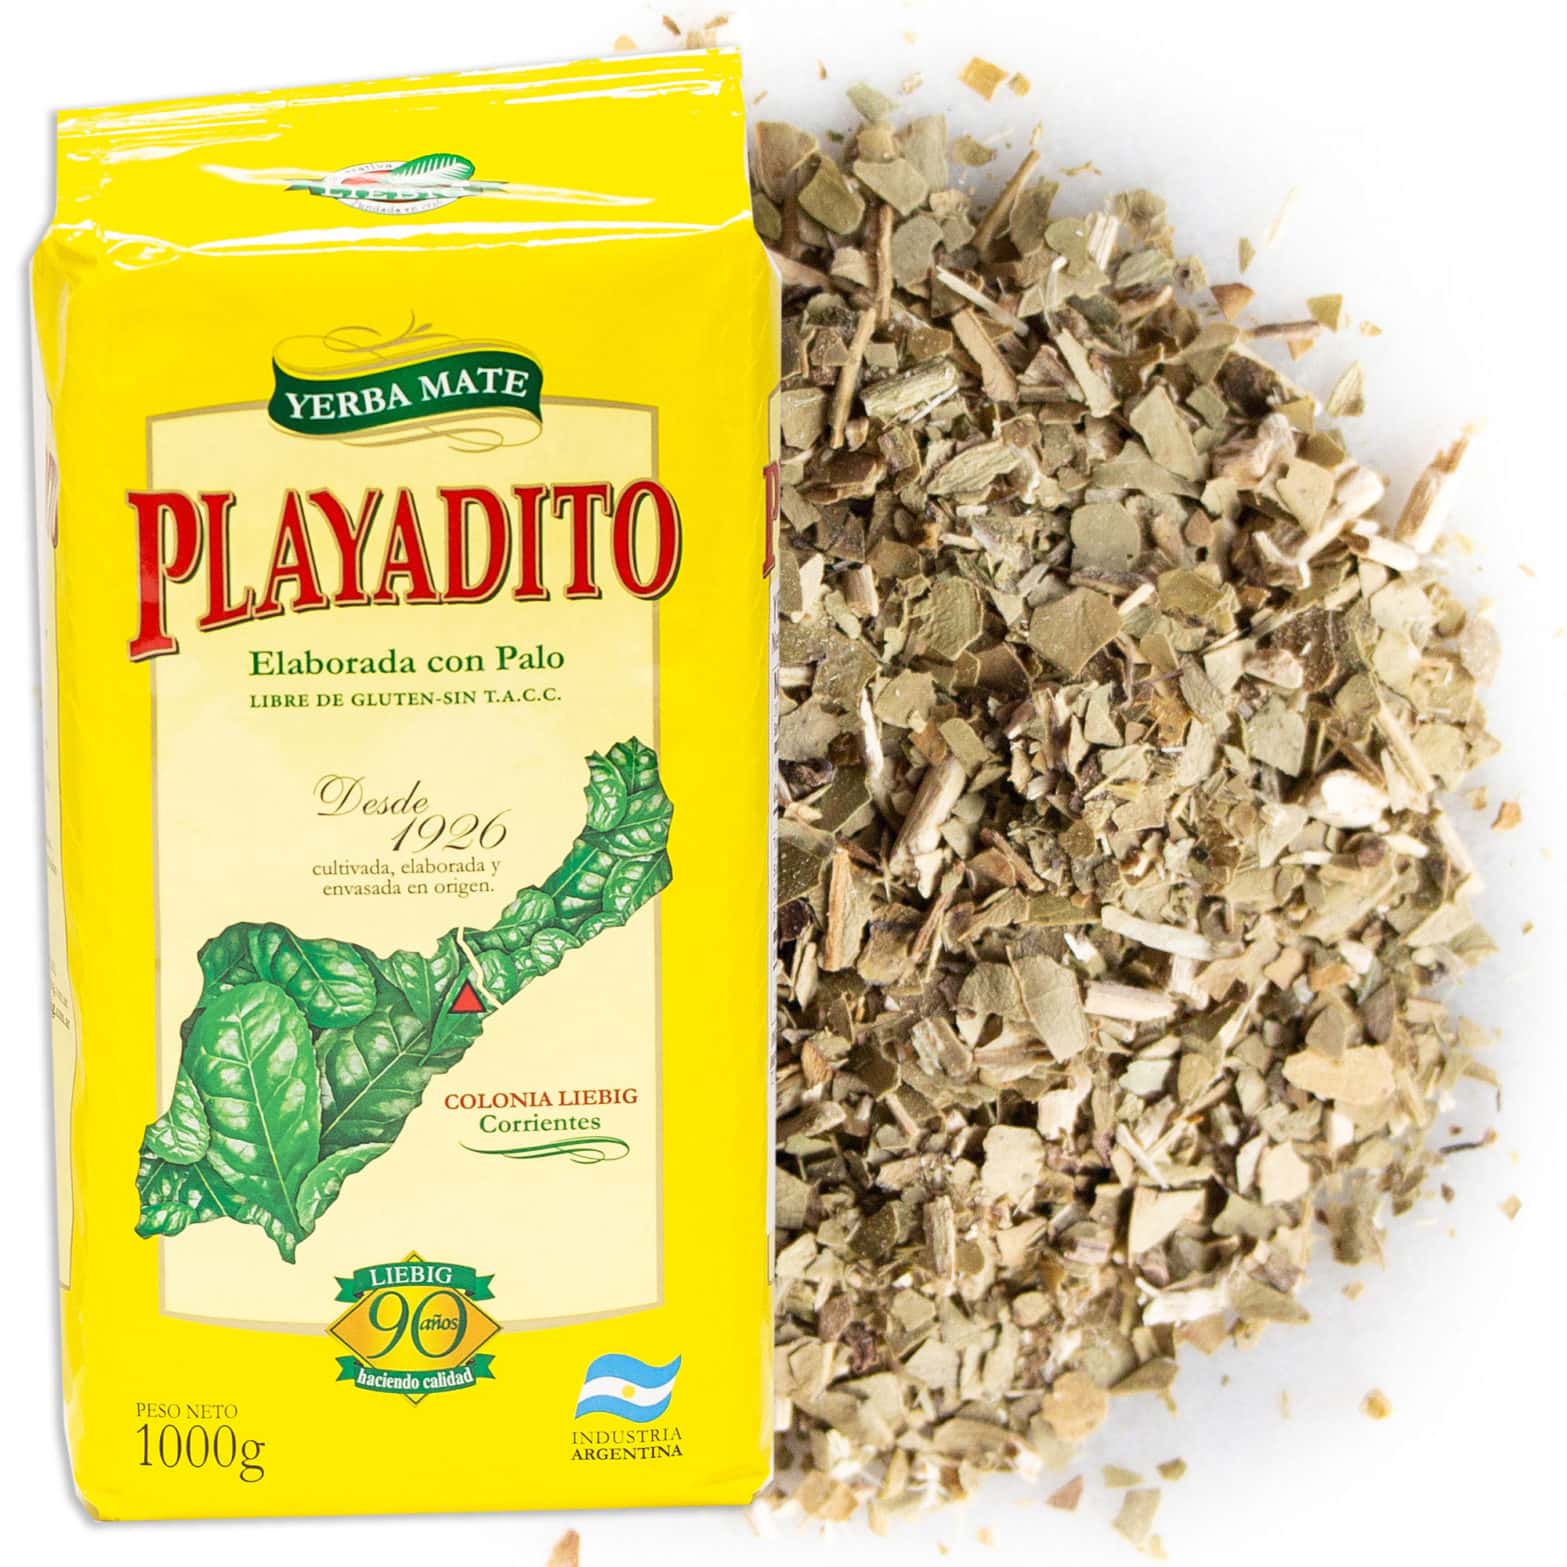 Playadito Argentine Yerba Mate Tea 1kg, 2.2lbs